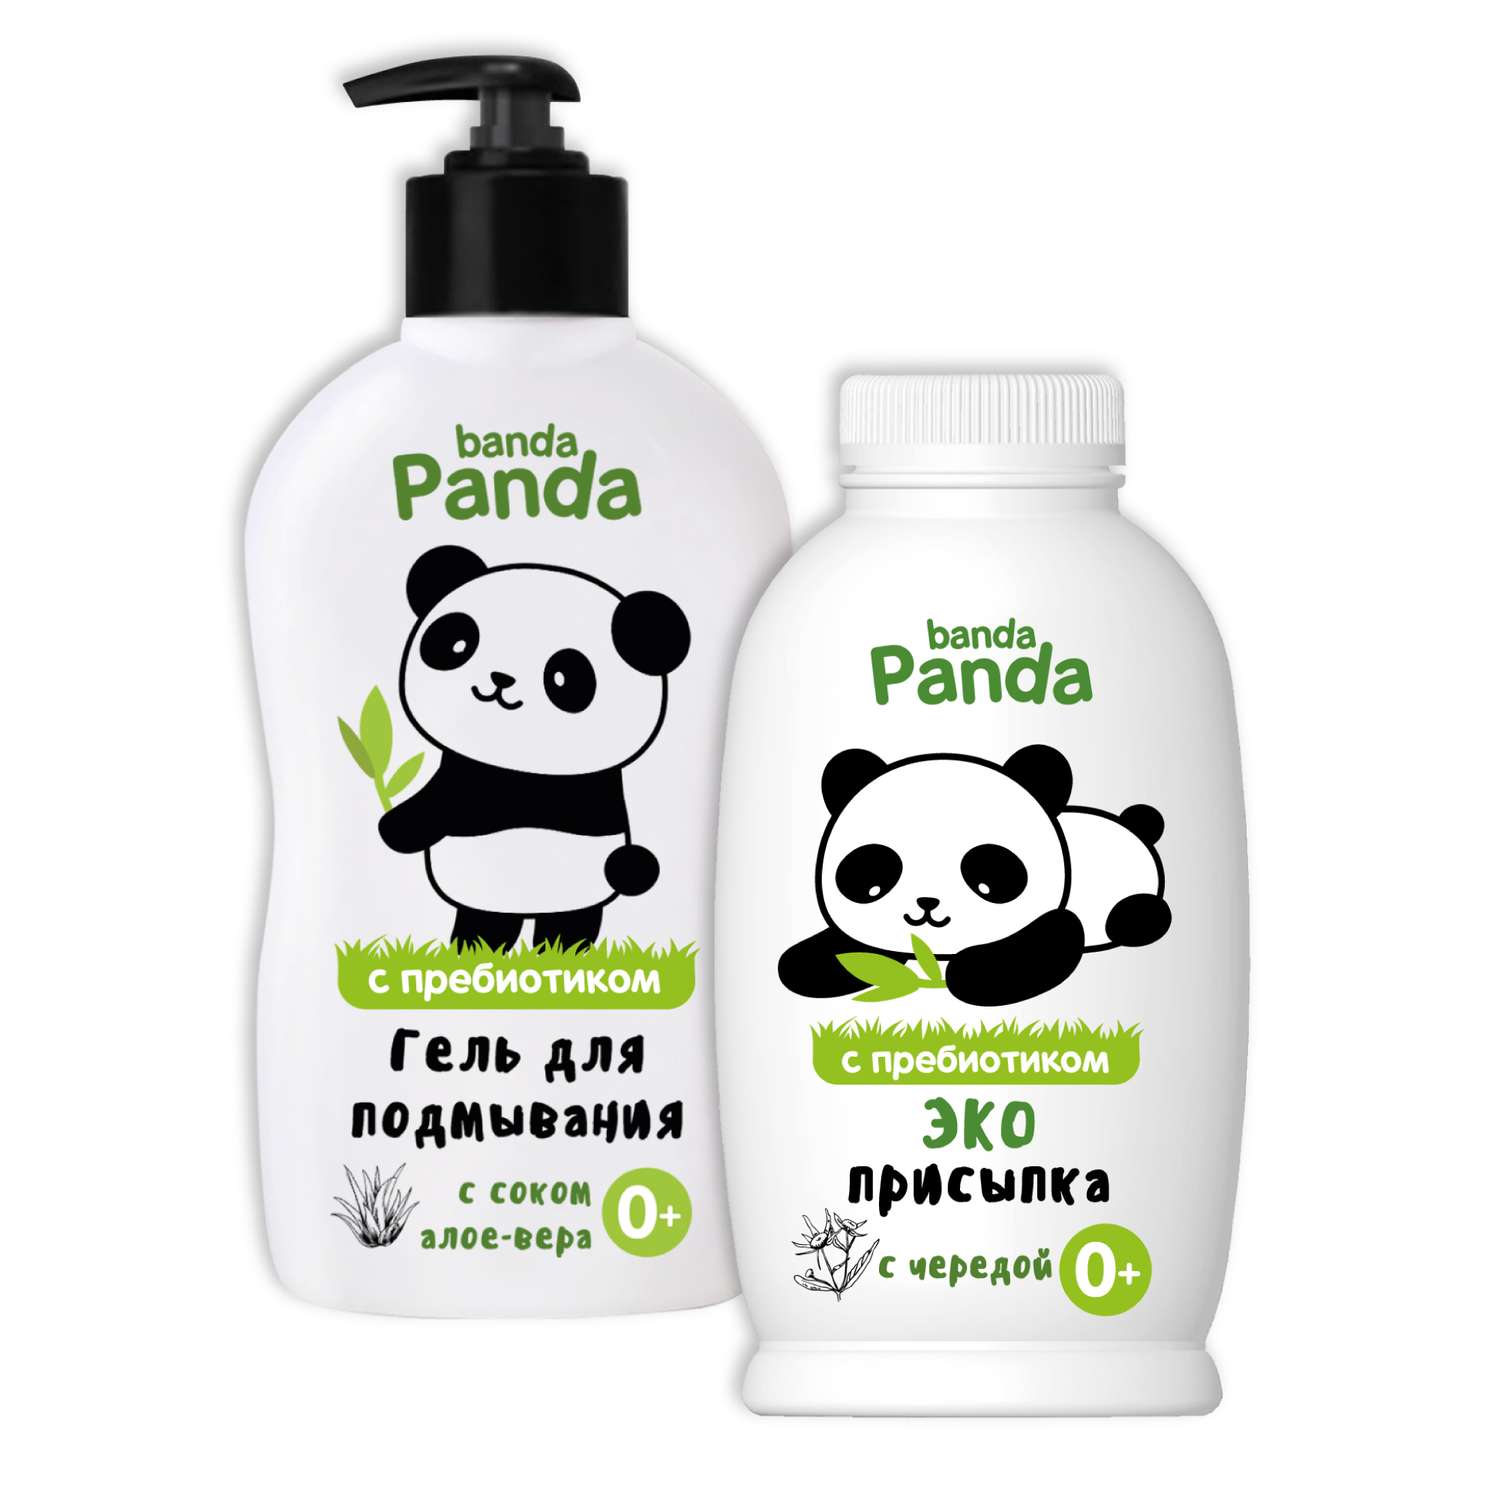 Набор с Пребиотиком banda Panda Присыпка детская 100г Гель для подмывания 250мл 0+ мягкого действия - фото 2